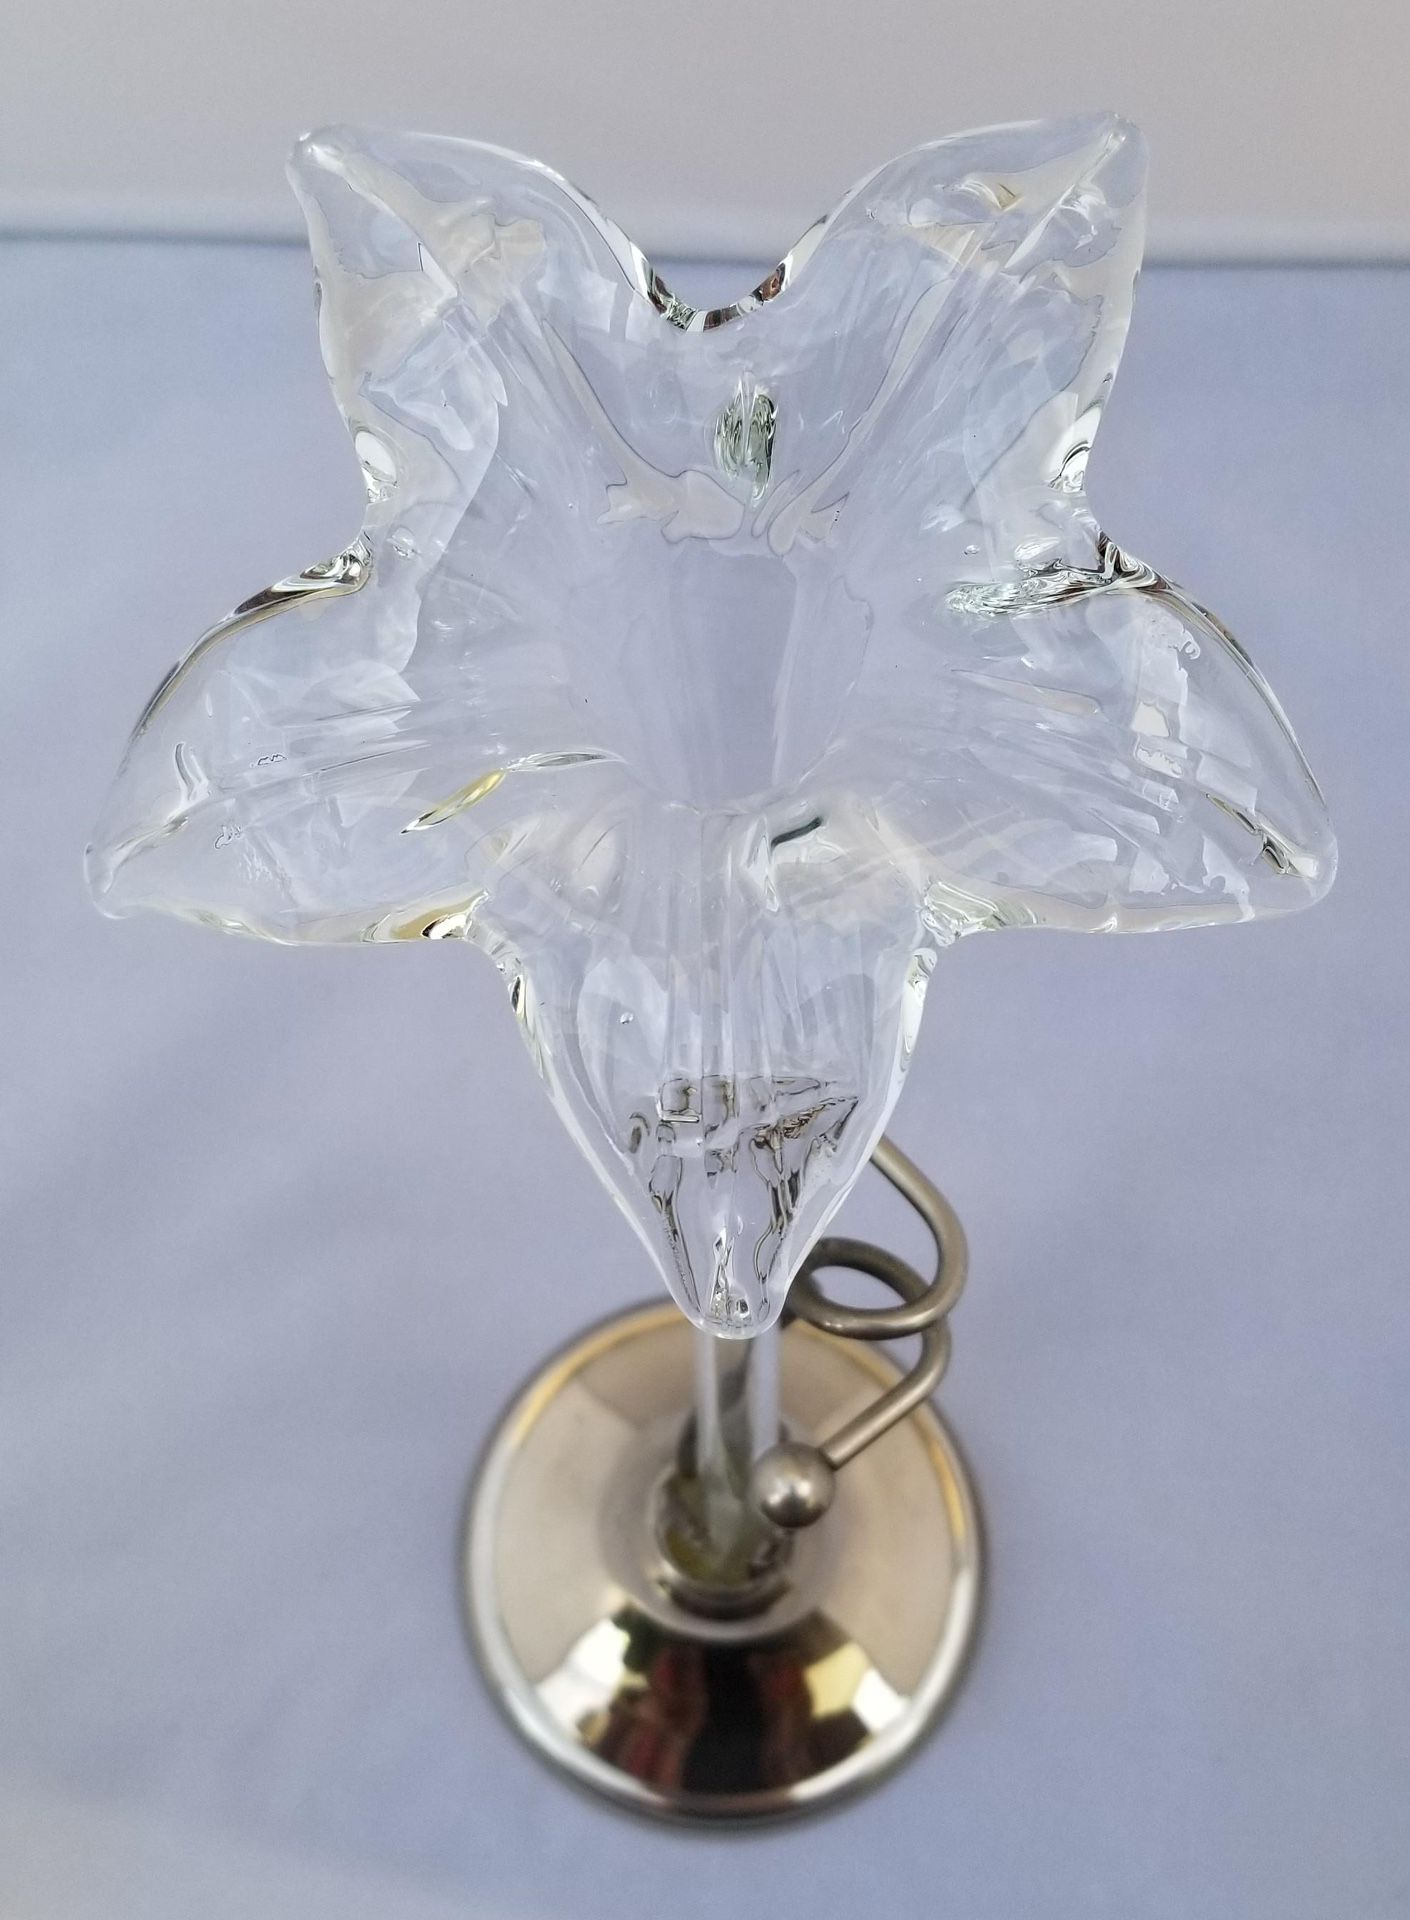 Vintage Hand-Blown Glass Art Nouveau Style Lily Vase